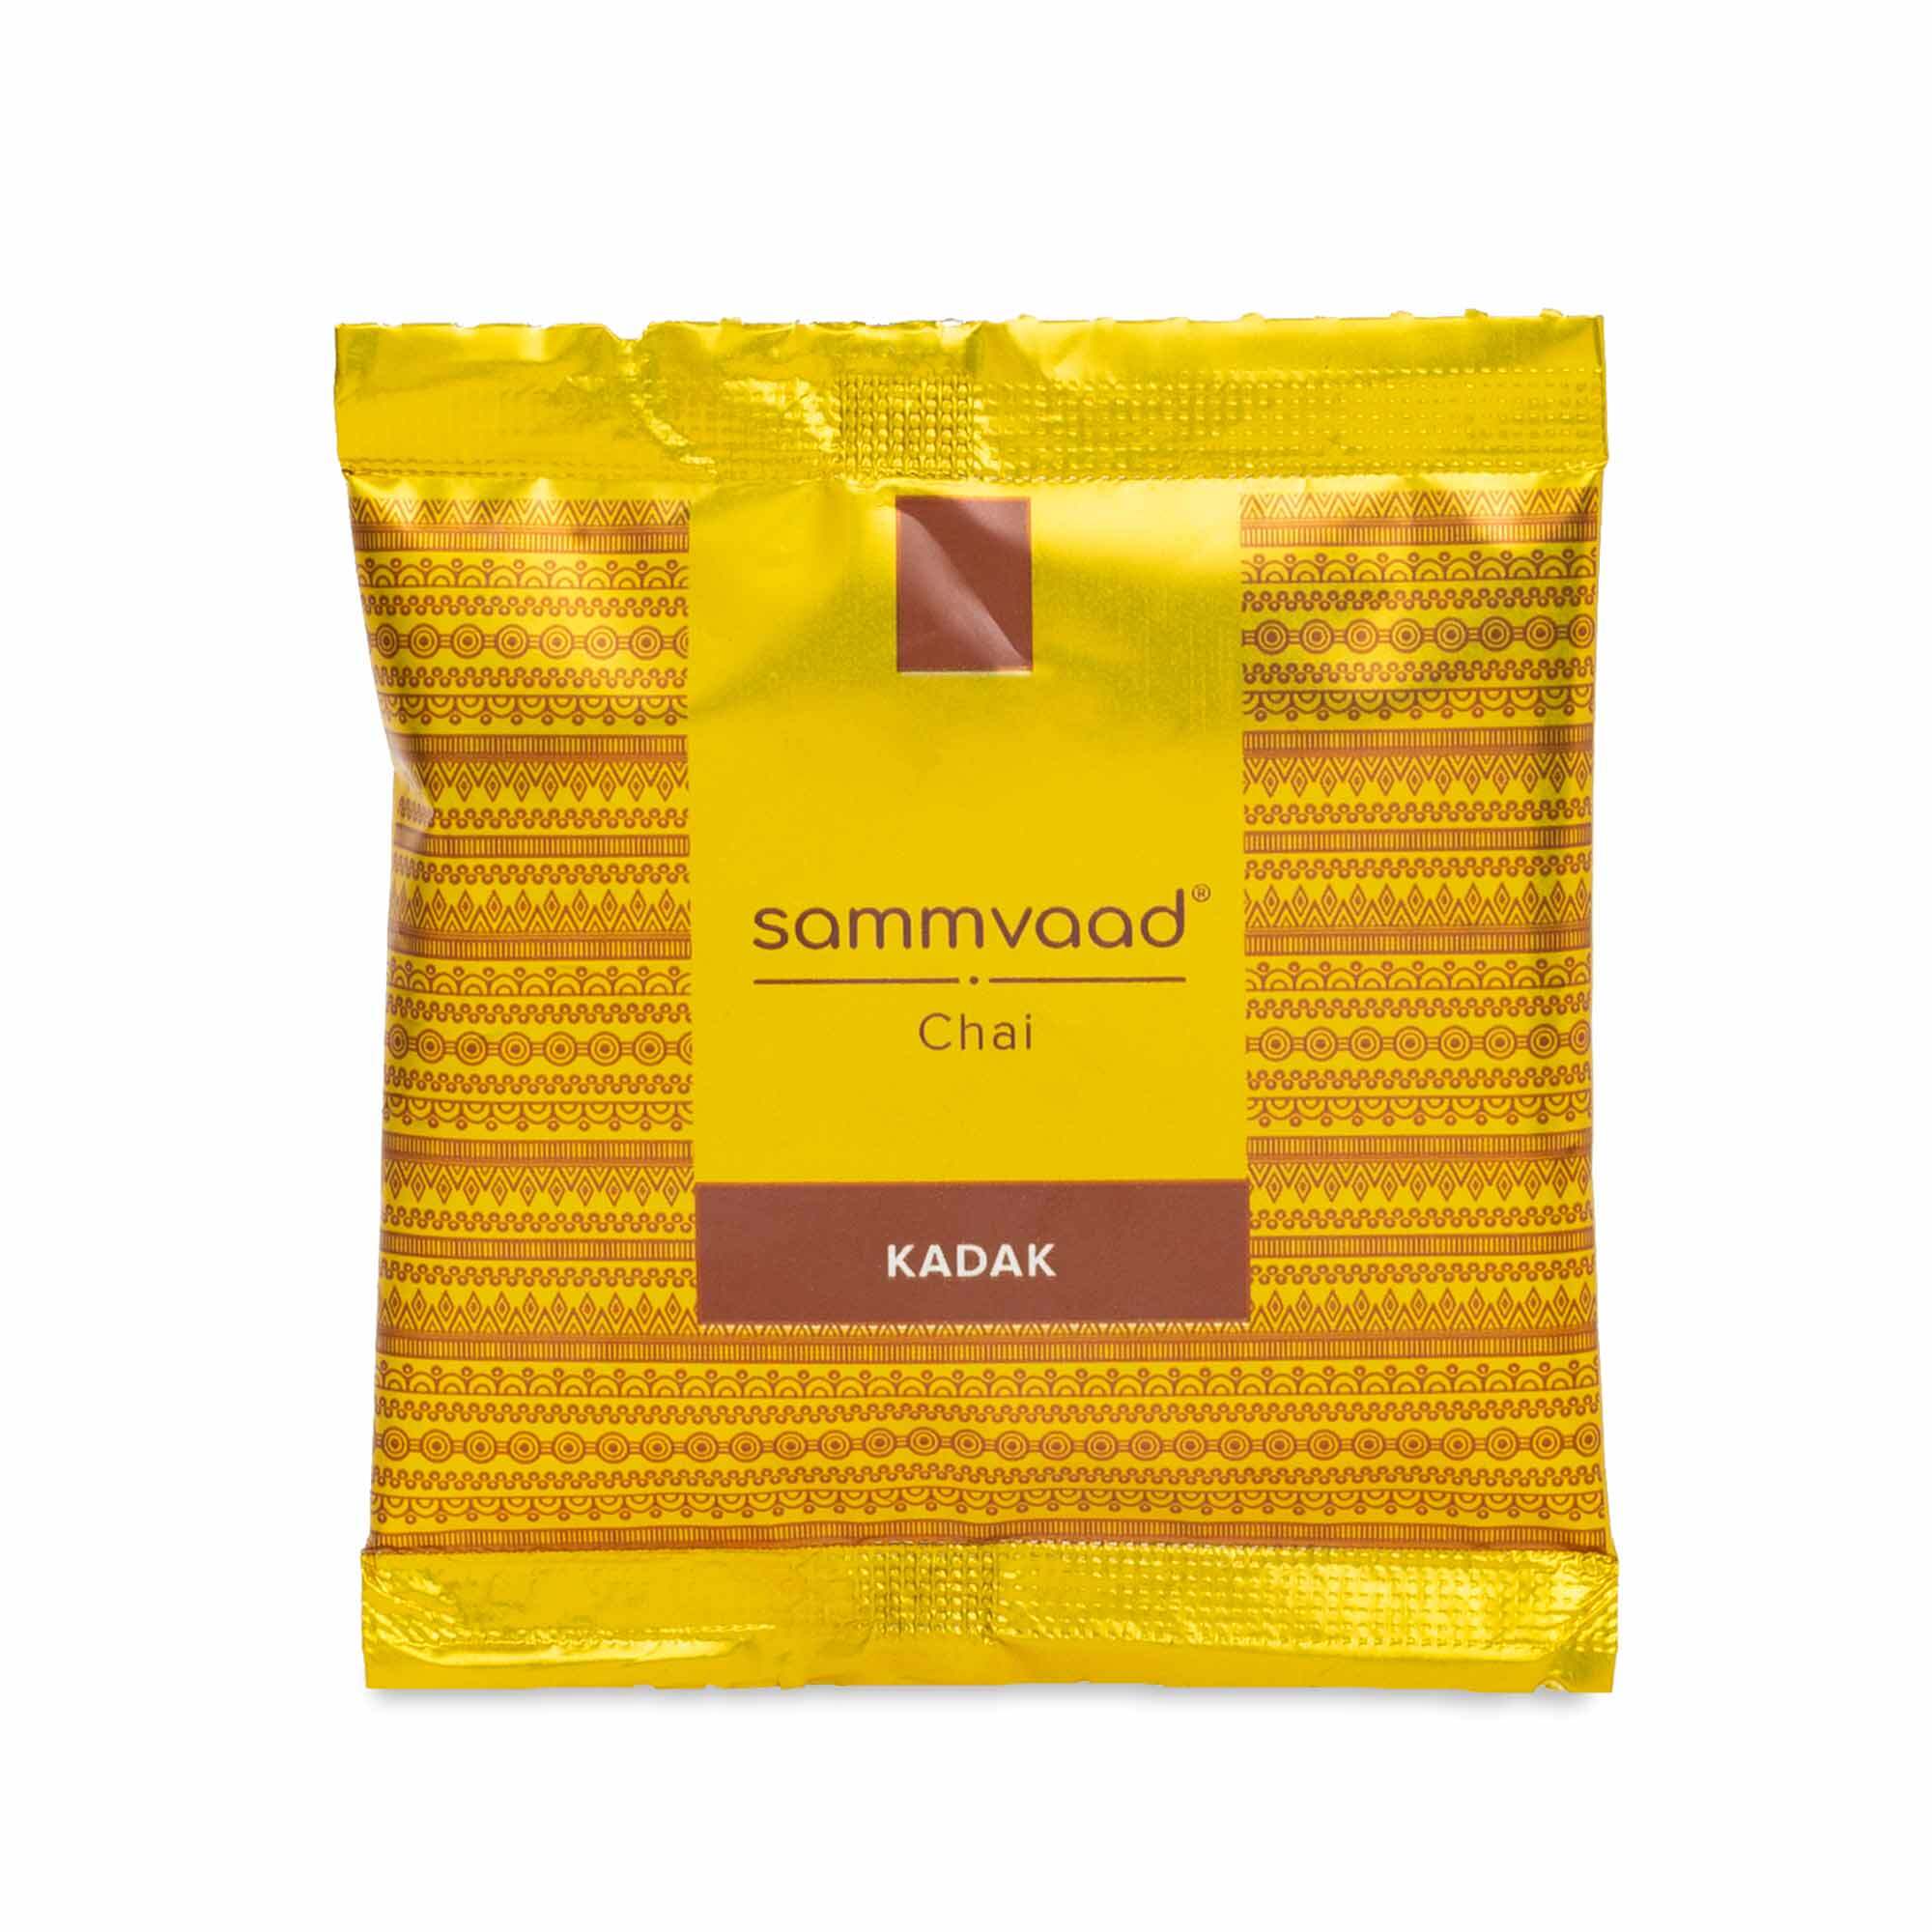 Sammvaad Kadak Chai 100 gms (10 Gms X 10 Units)